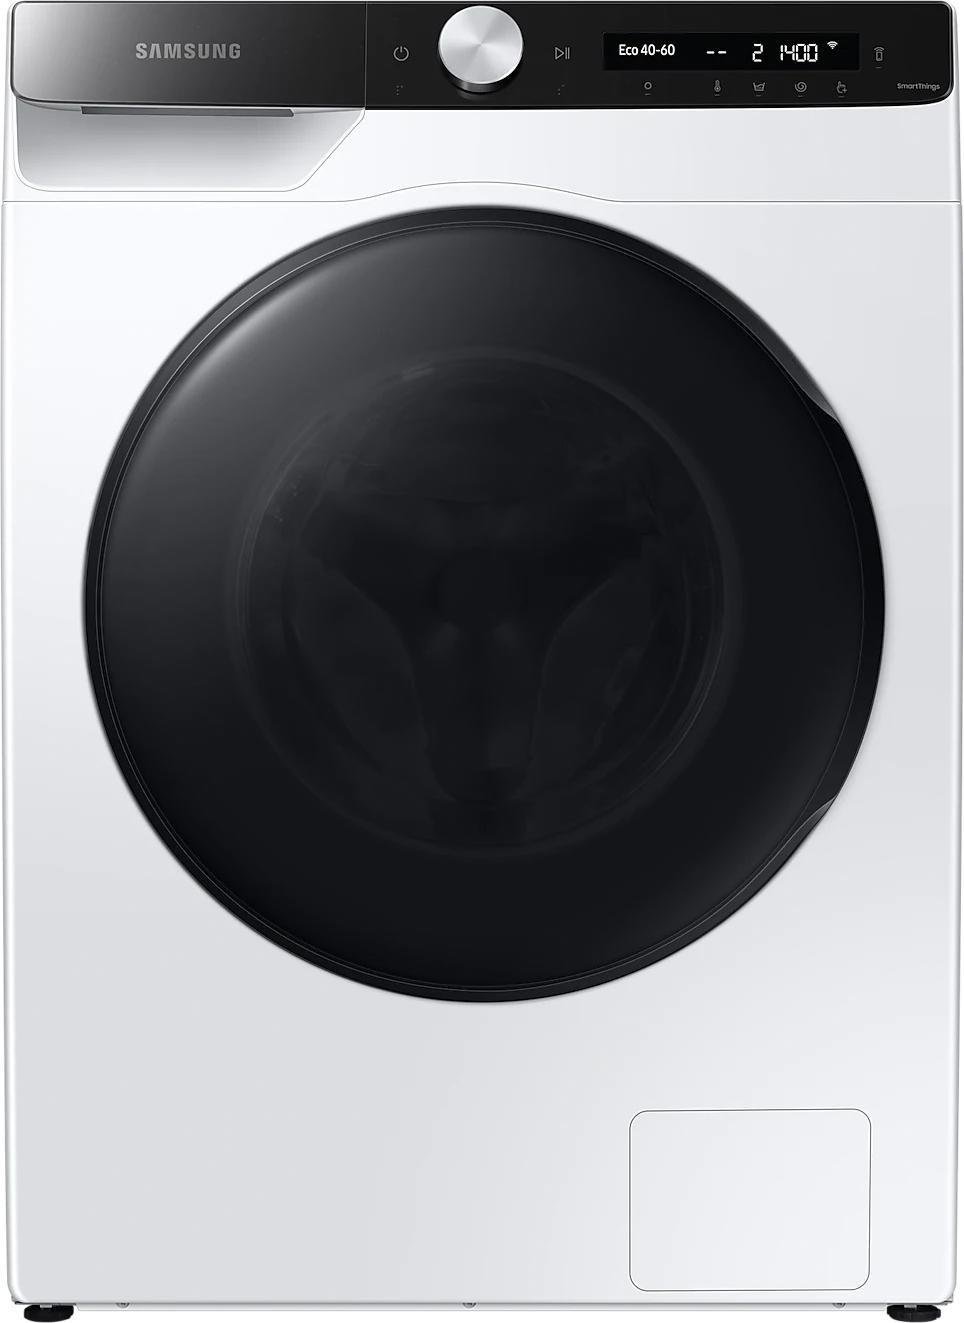 Masini de spalat rufe - Mașină de spălat rufe cu uscător Samsung WD 10T534DBE,
alb,6 kg